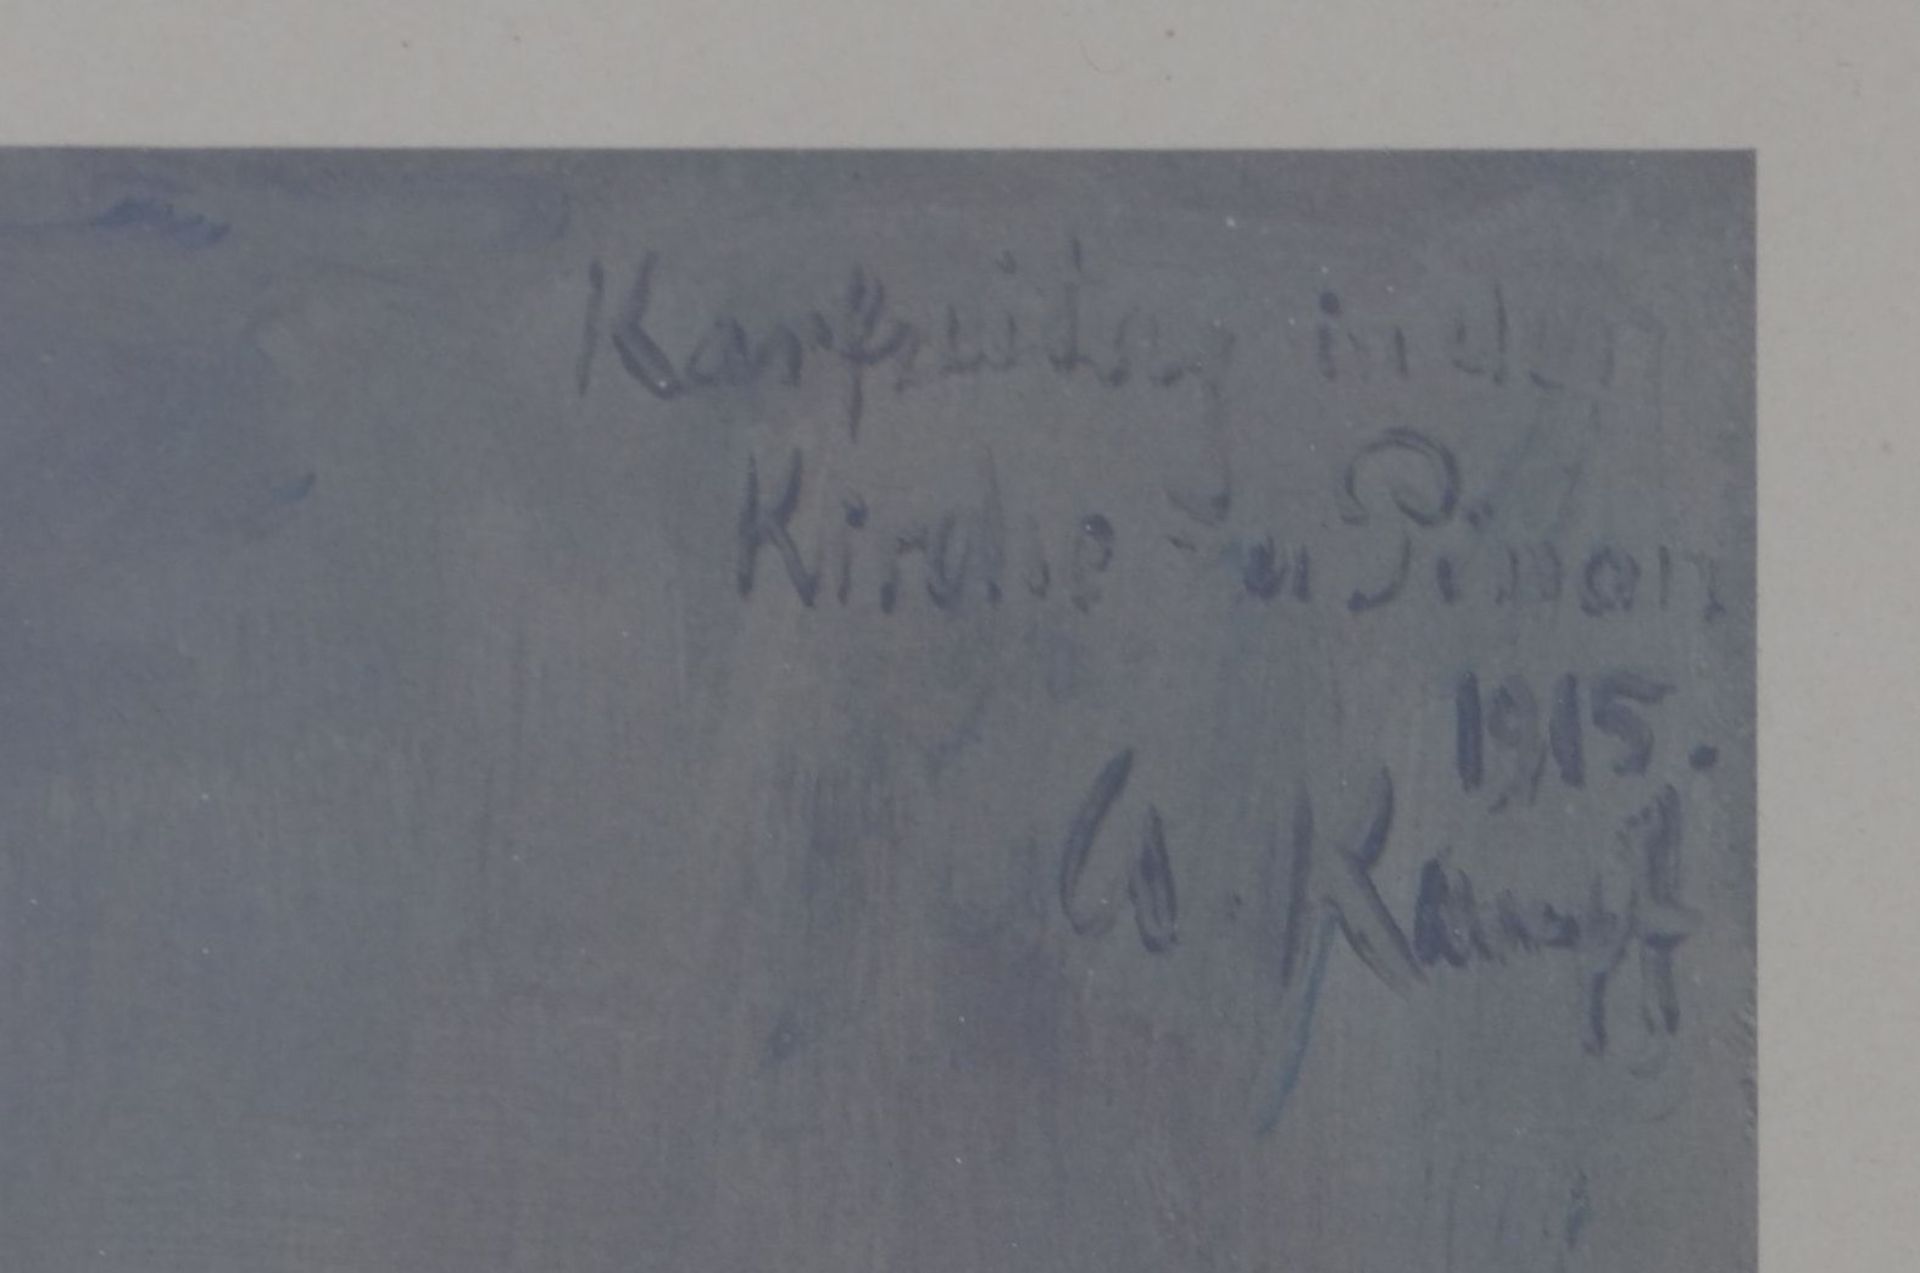 gr. Kunstdruck "Antreten zum Gebet" nach. W. Kaempf, Karfreitag 1915,alt ger/Glas, RG 76x62 cm - Bild 4 aus 5